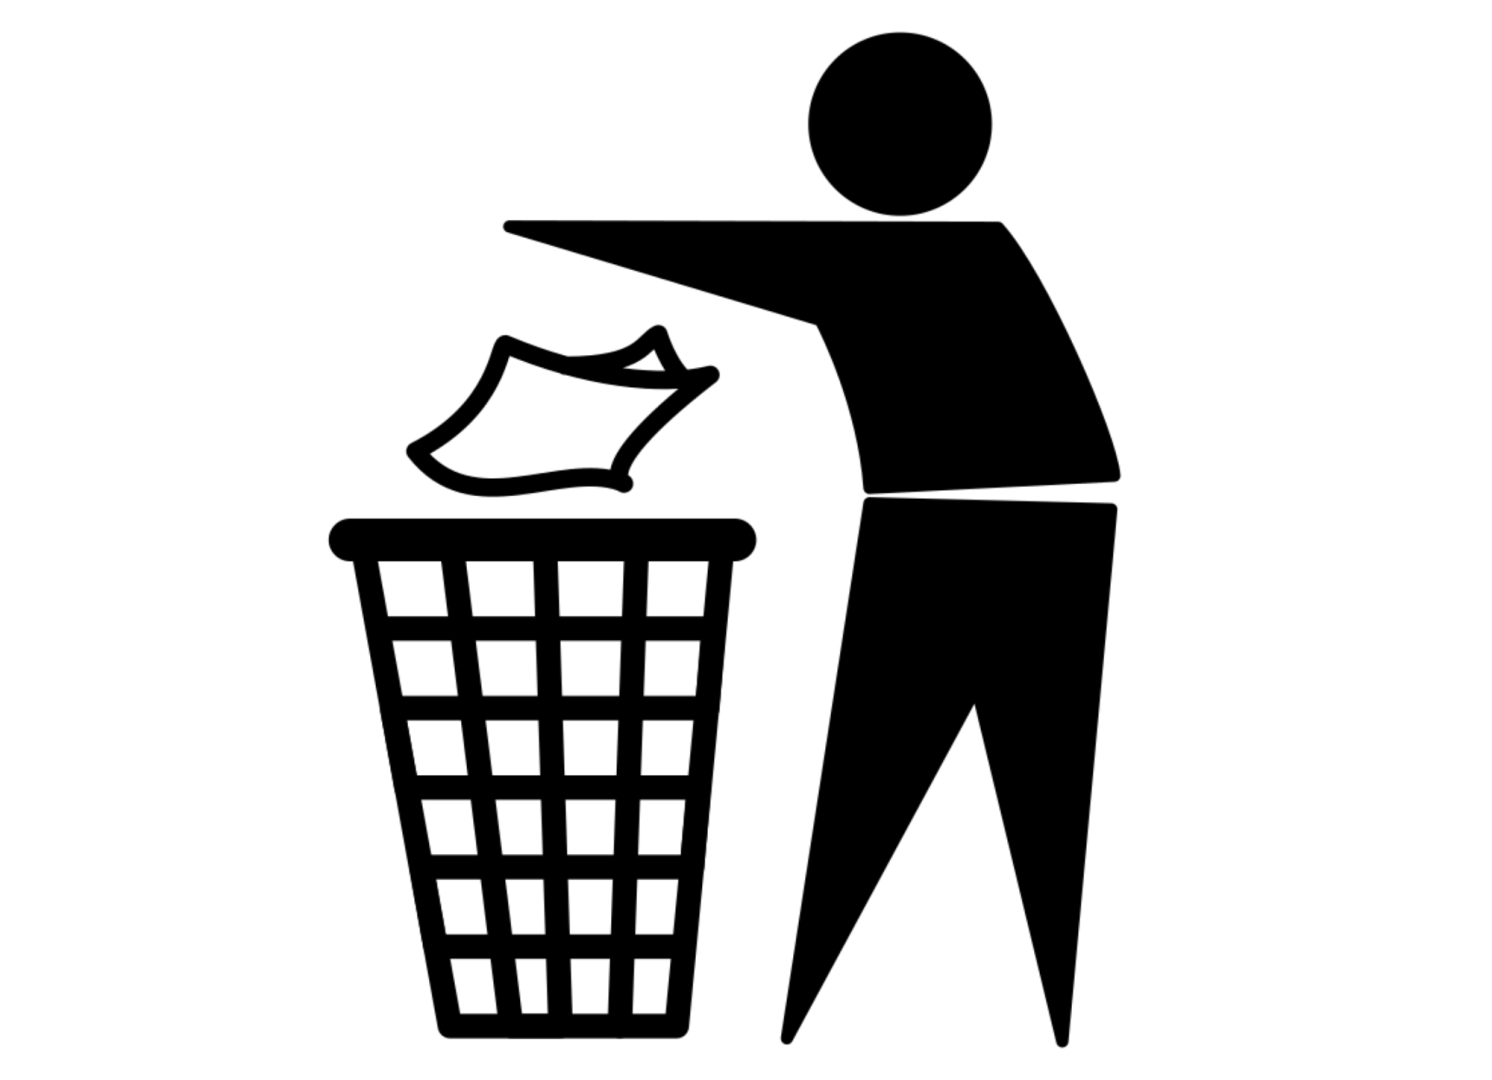 Pictogramme d'un bonhomme qui jette ses déchets dans une poubelle